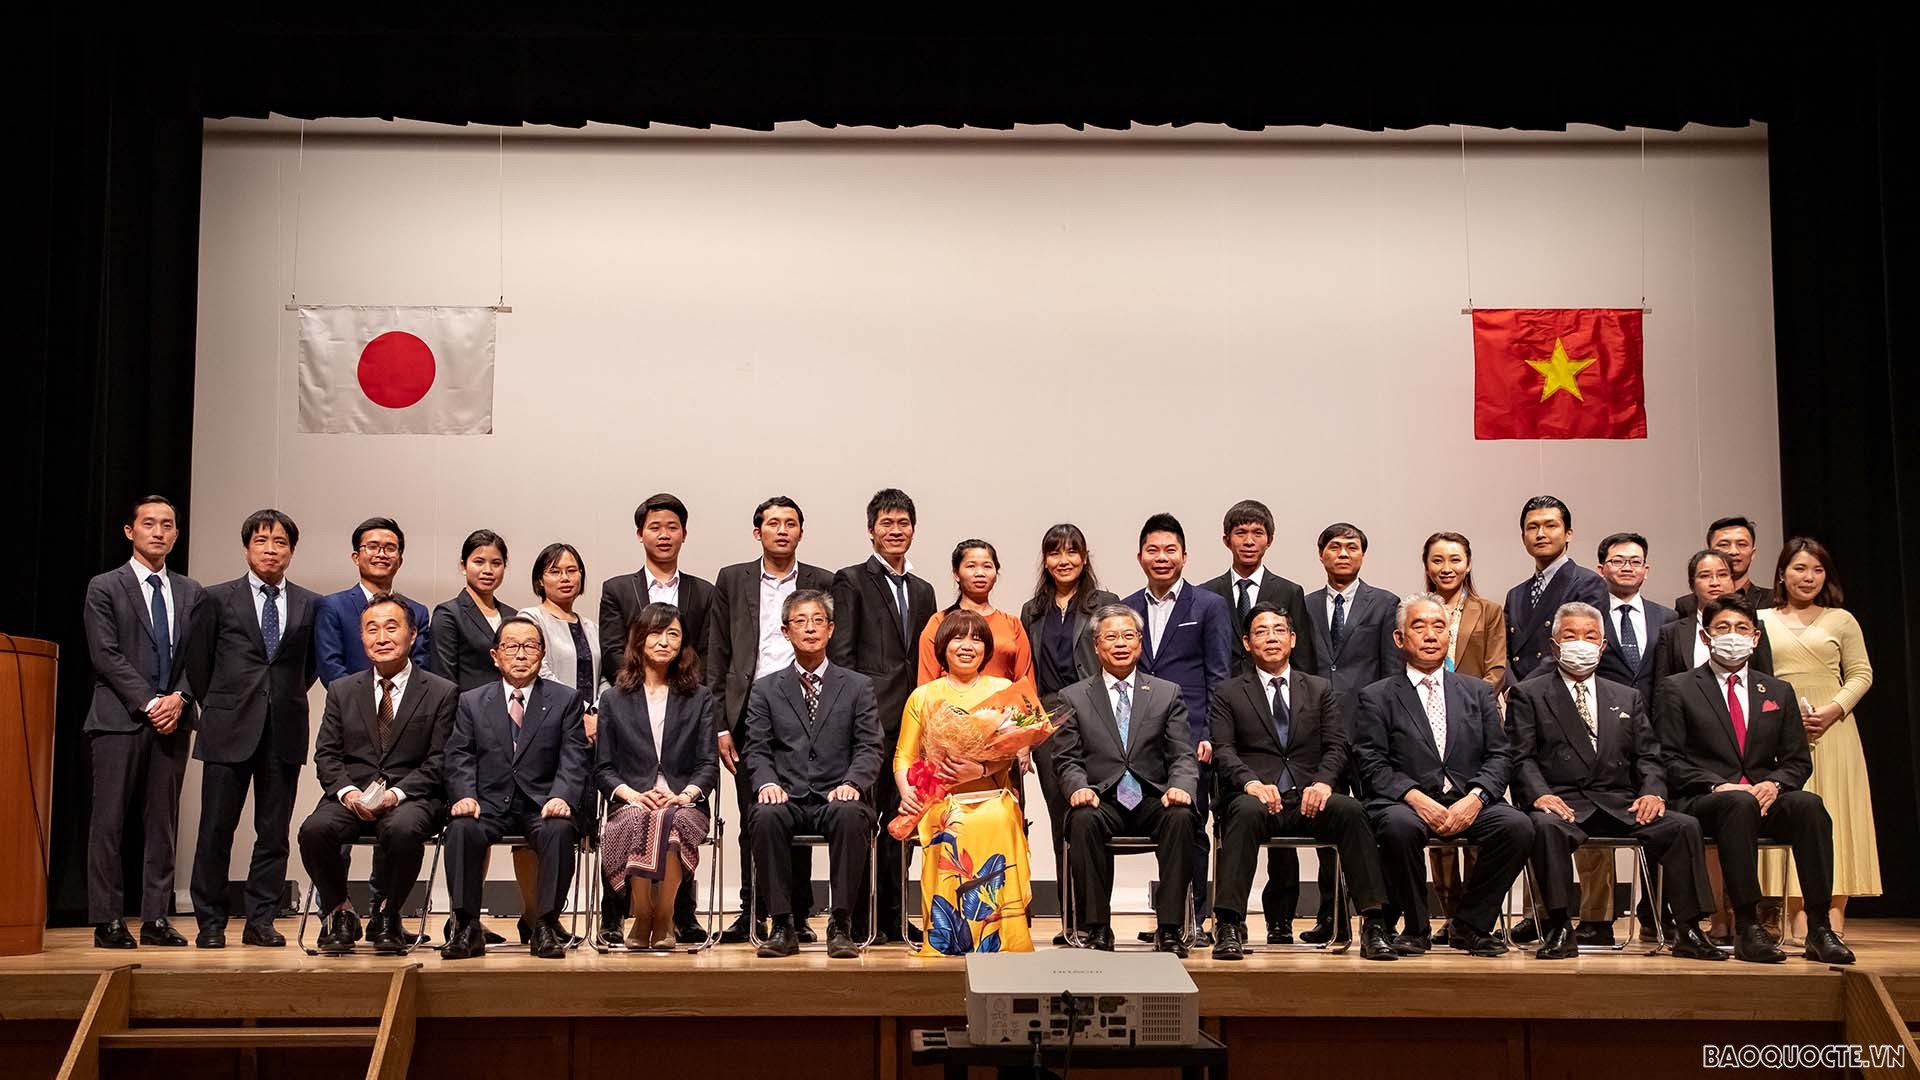 Các đại biểu chụp ảnh lưu niệm với Ban chấp hành Hội Hội người Việt Nam tại Kumamoto.